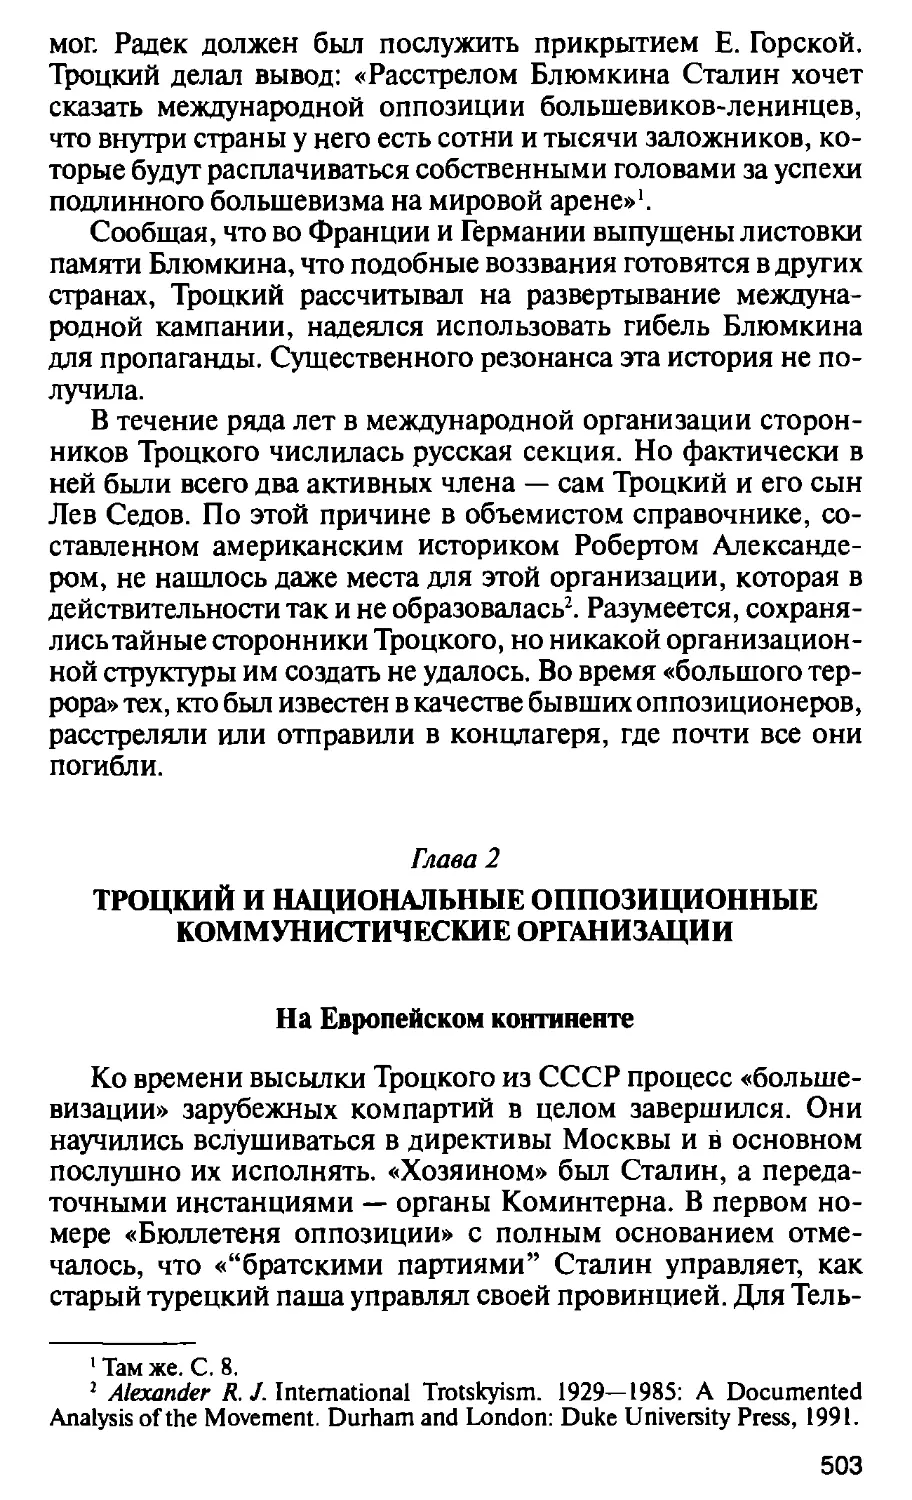 Глава 2. Троцкий и национальные оппозиционные коммунистические организации